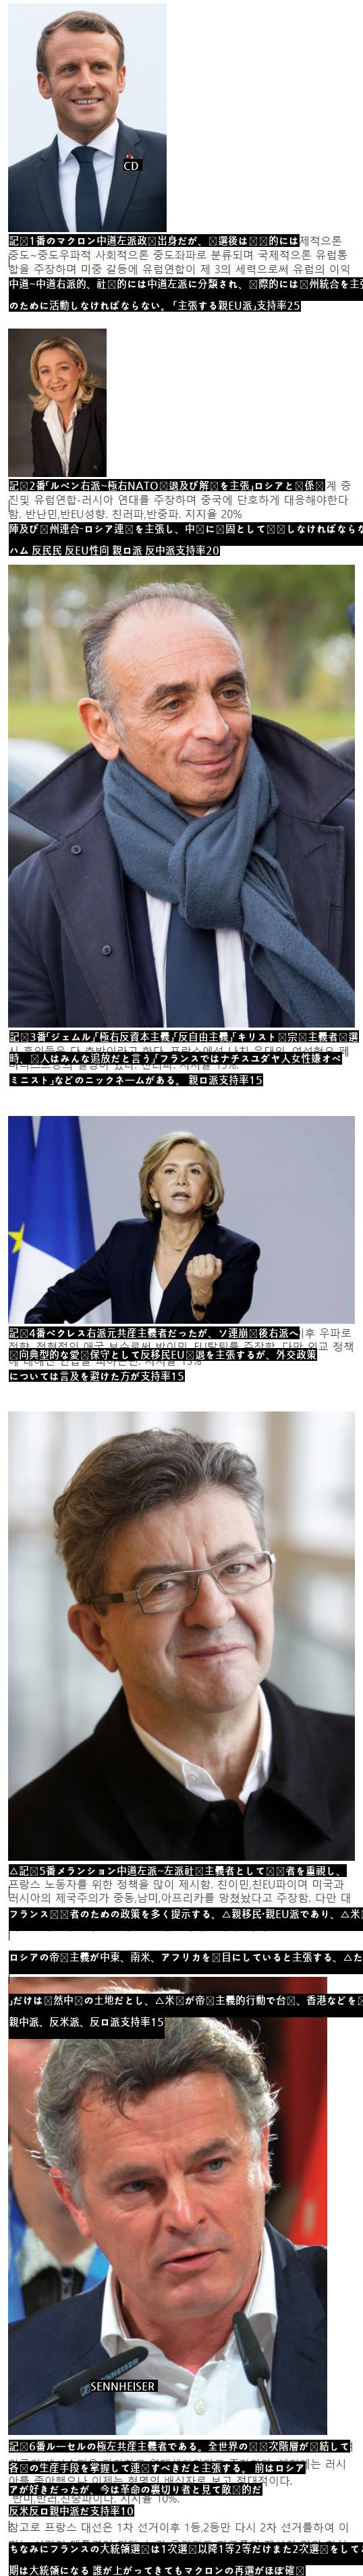 選挙まであと2ヵ月となったフランスの大統領選候補者たち